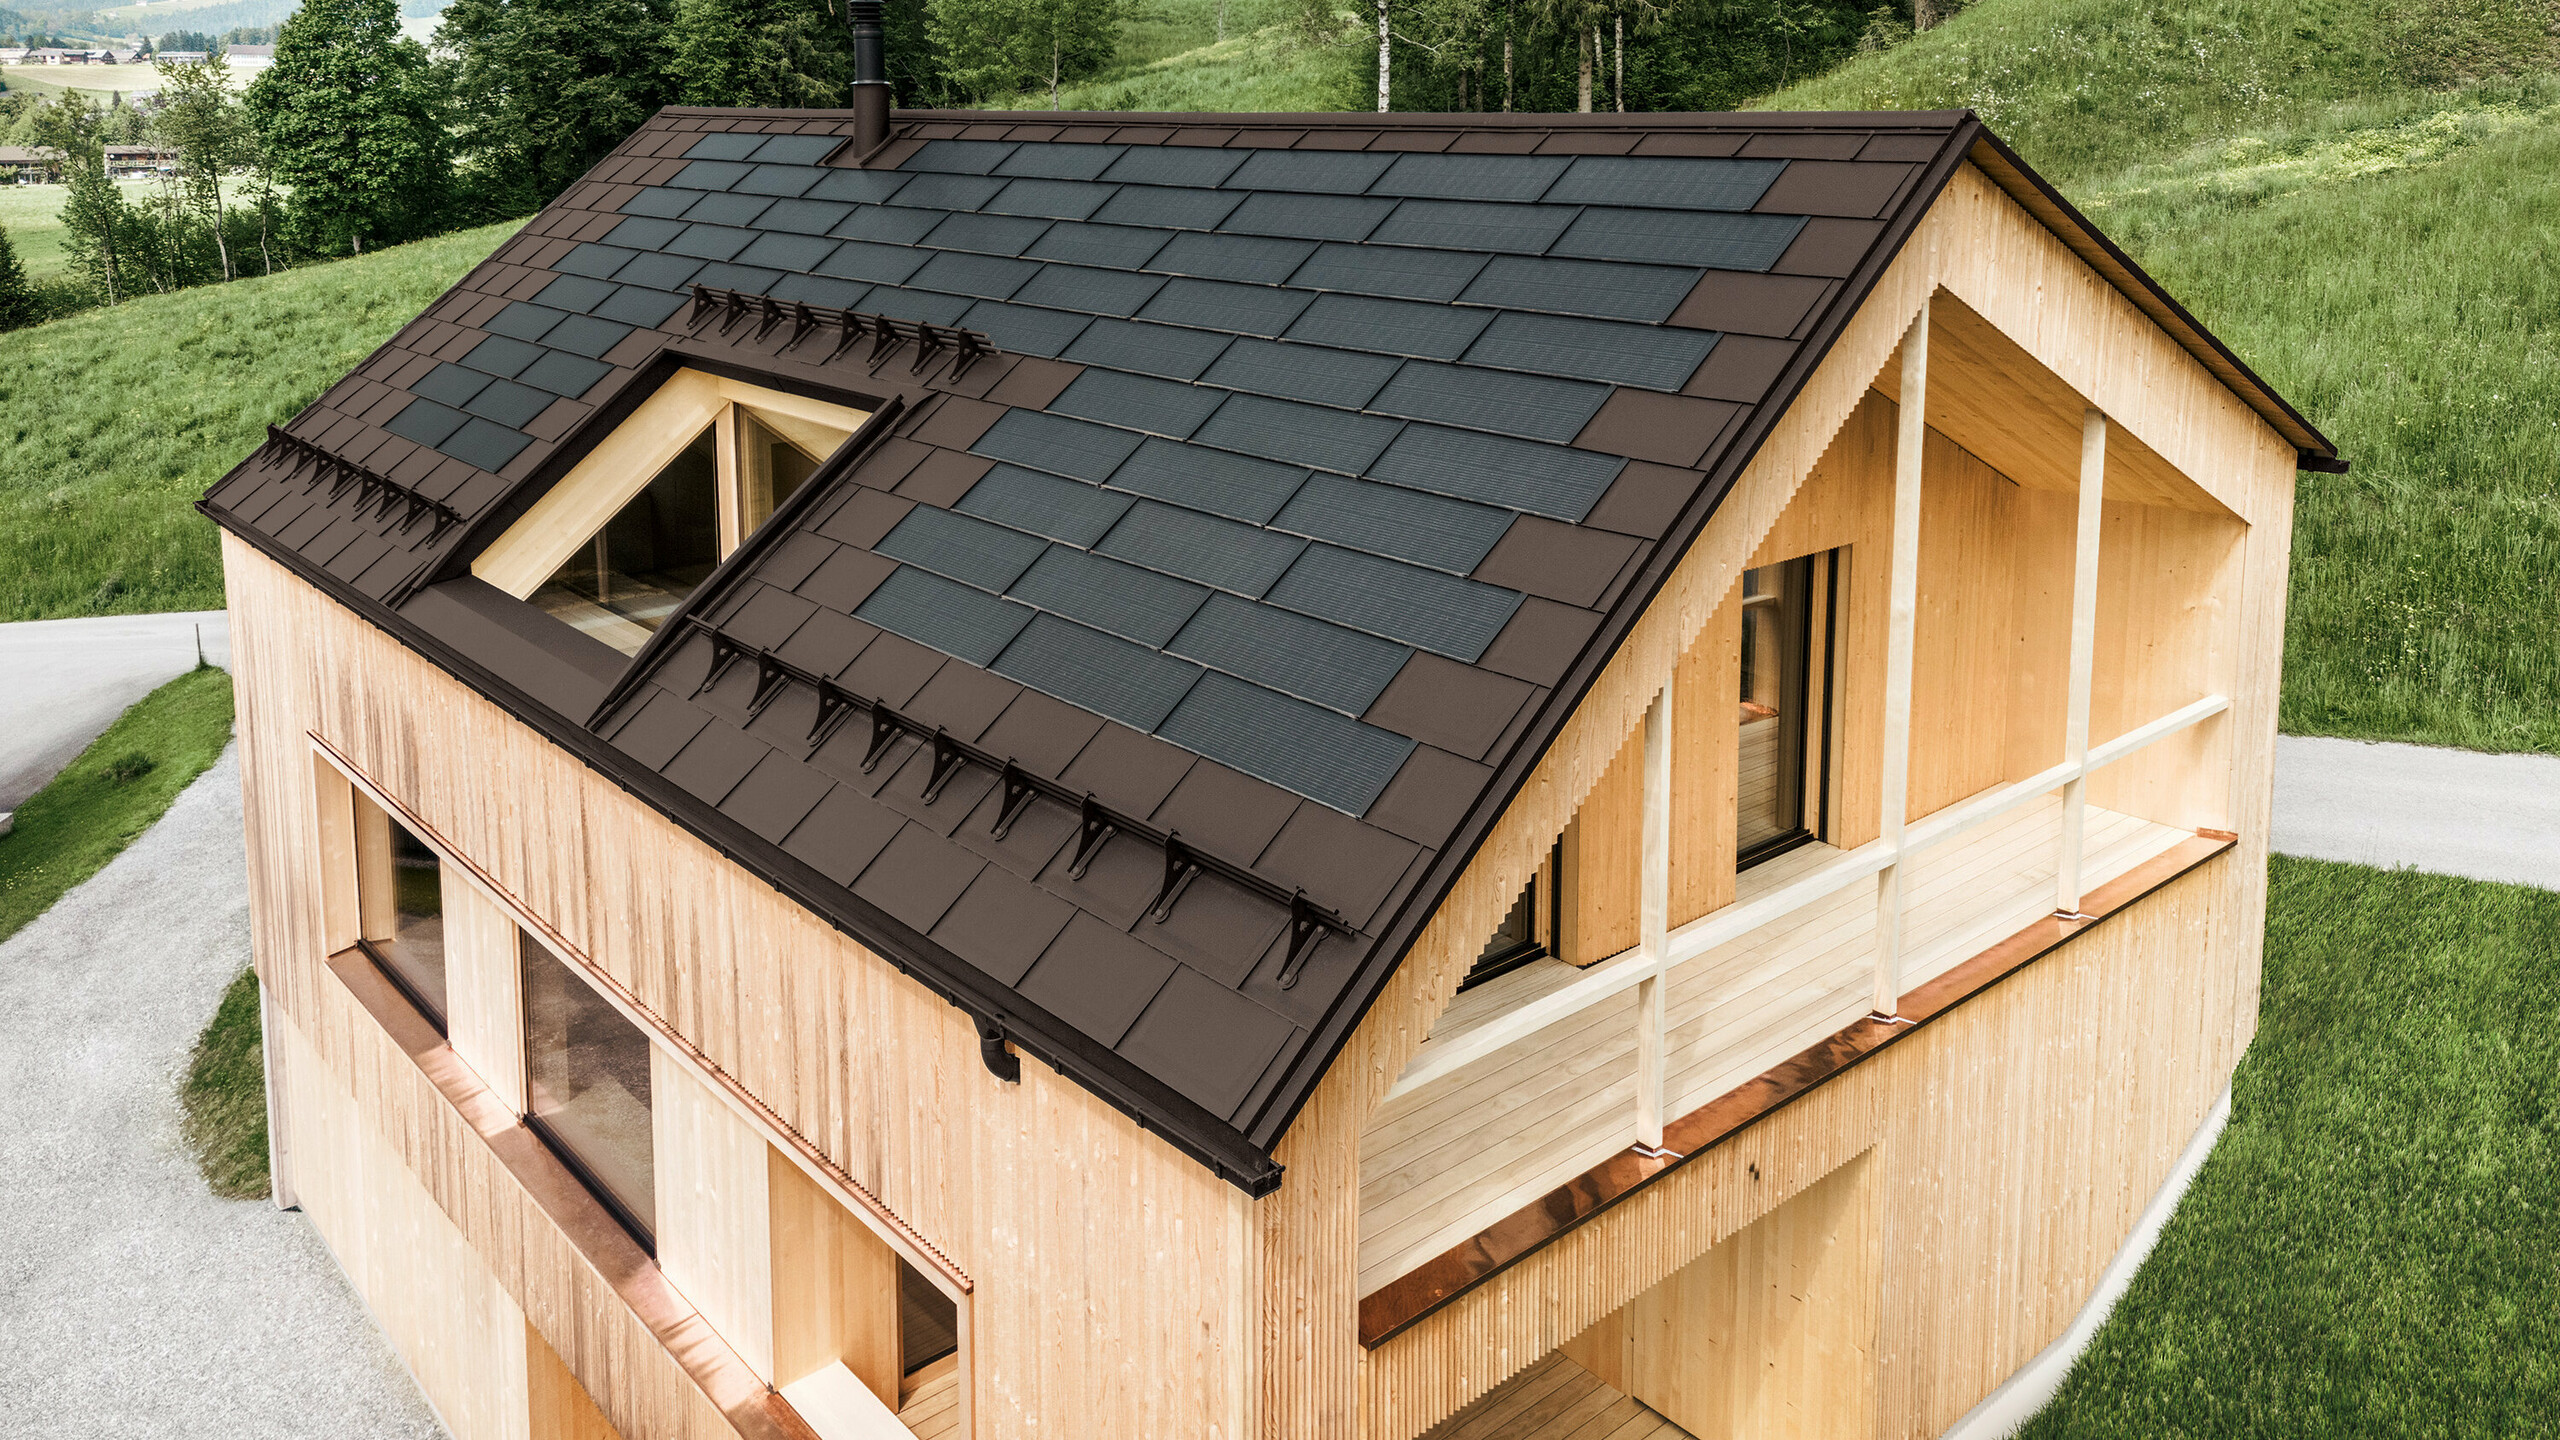 Maison individuelle dans la localité autrichienne d'Egg avec le panneau solaire de toiture PREFA et le panneau de toiture R.16 en brun noisette, combinés à une façade en bois